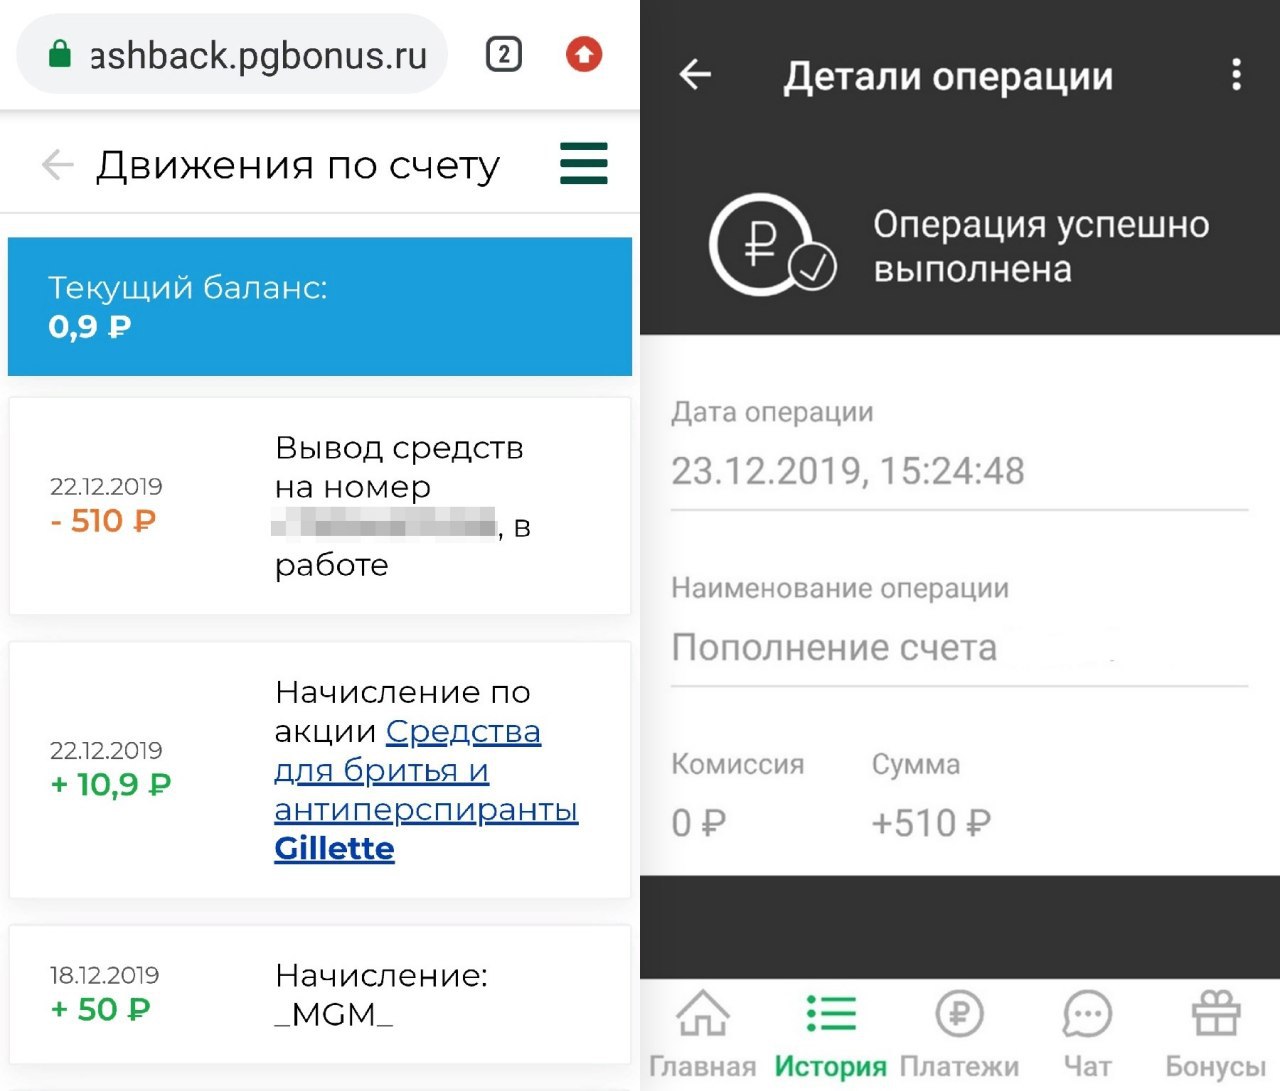 Заработок в телеграмме на русском без вложений с выводом денег карту сбербанка фото 59